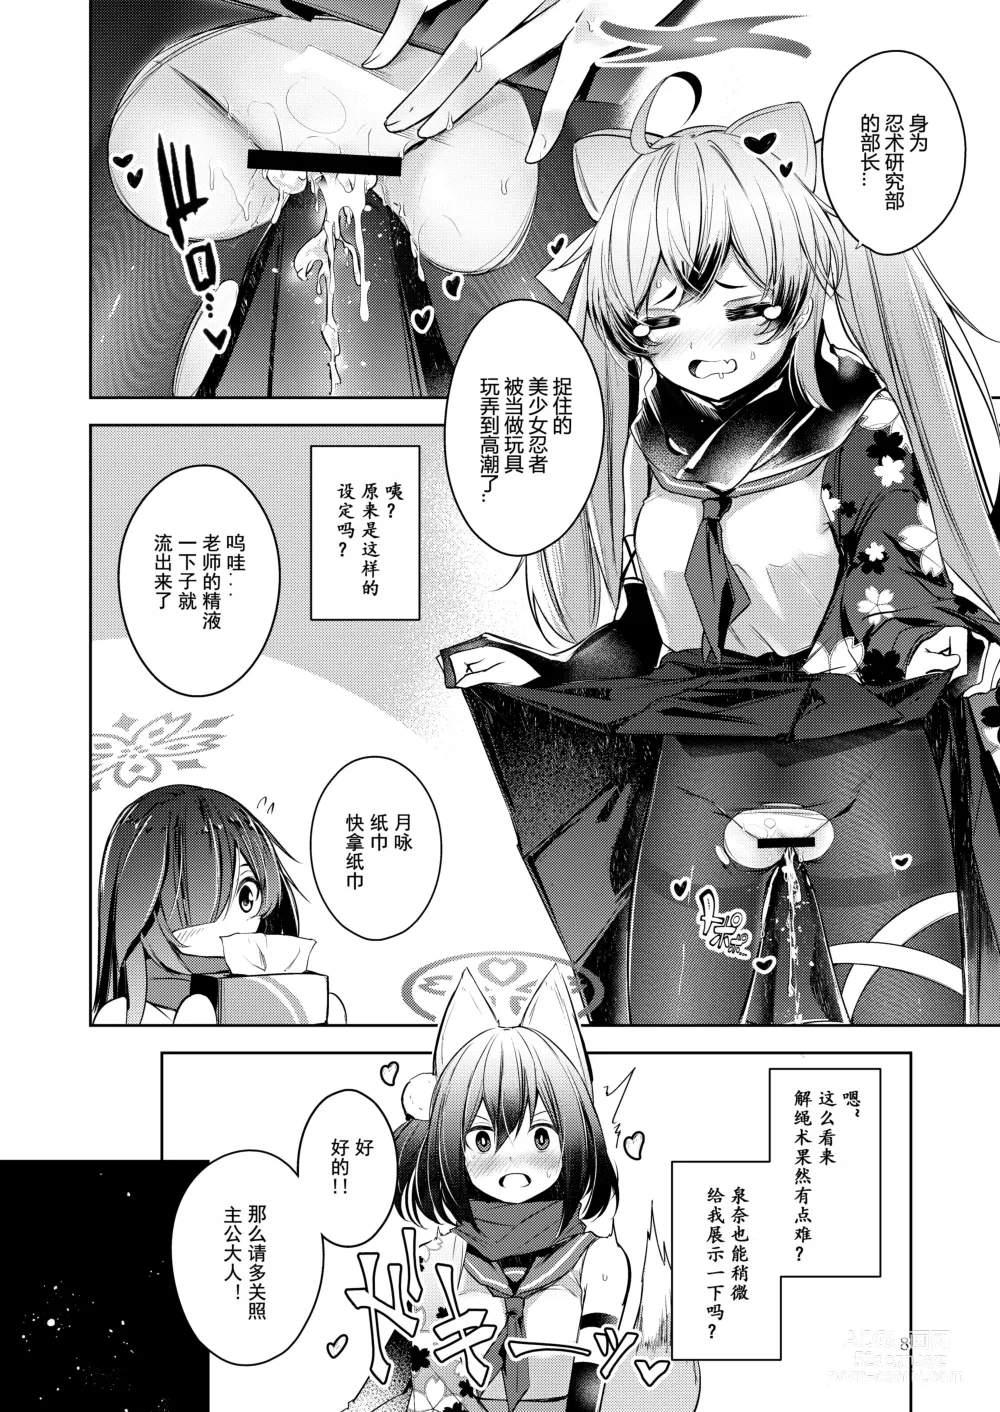 Page 9 of doujinshi Shinobi Koishitau 2